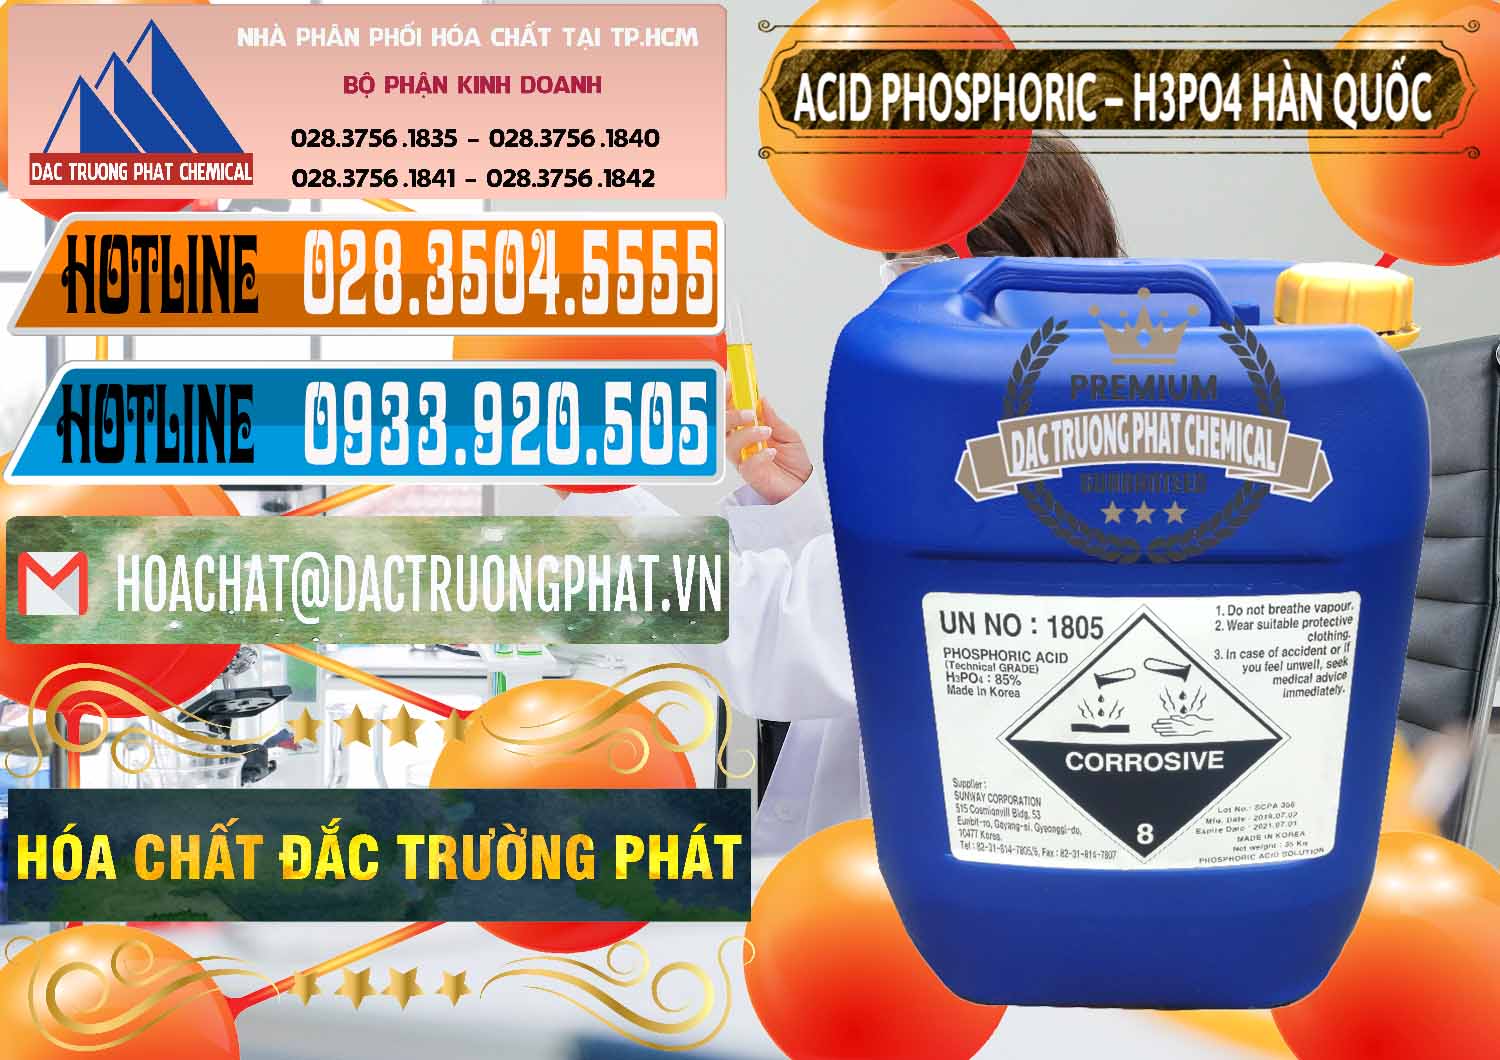 Đơn vị chuyên bán _ phân phối Acid Phosphoric – H3PO4 85% Can Xanh Hàn Quốc Korea - 0016 - Chuyên bán & phân phối hóa chất tại TP.HCM - stmp.net